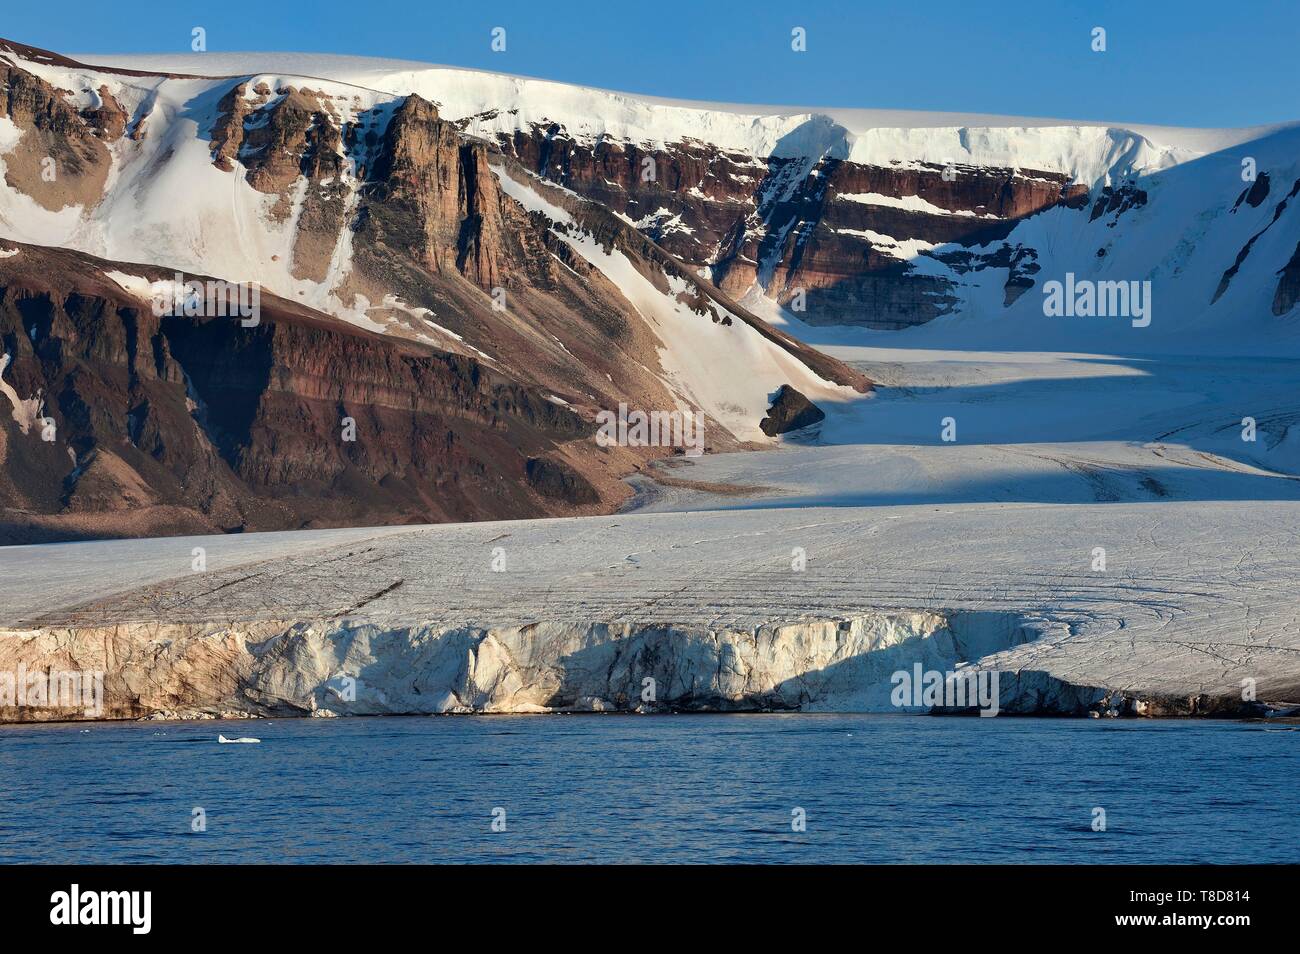 Le Groenland, côte nord-ouest, Murchison Sound au nord de la baie de Baffin, le Kissel Glacier sur Kiatak (Northumberland Island) Banque D'Images